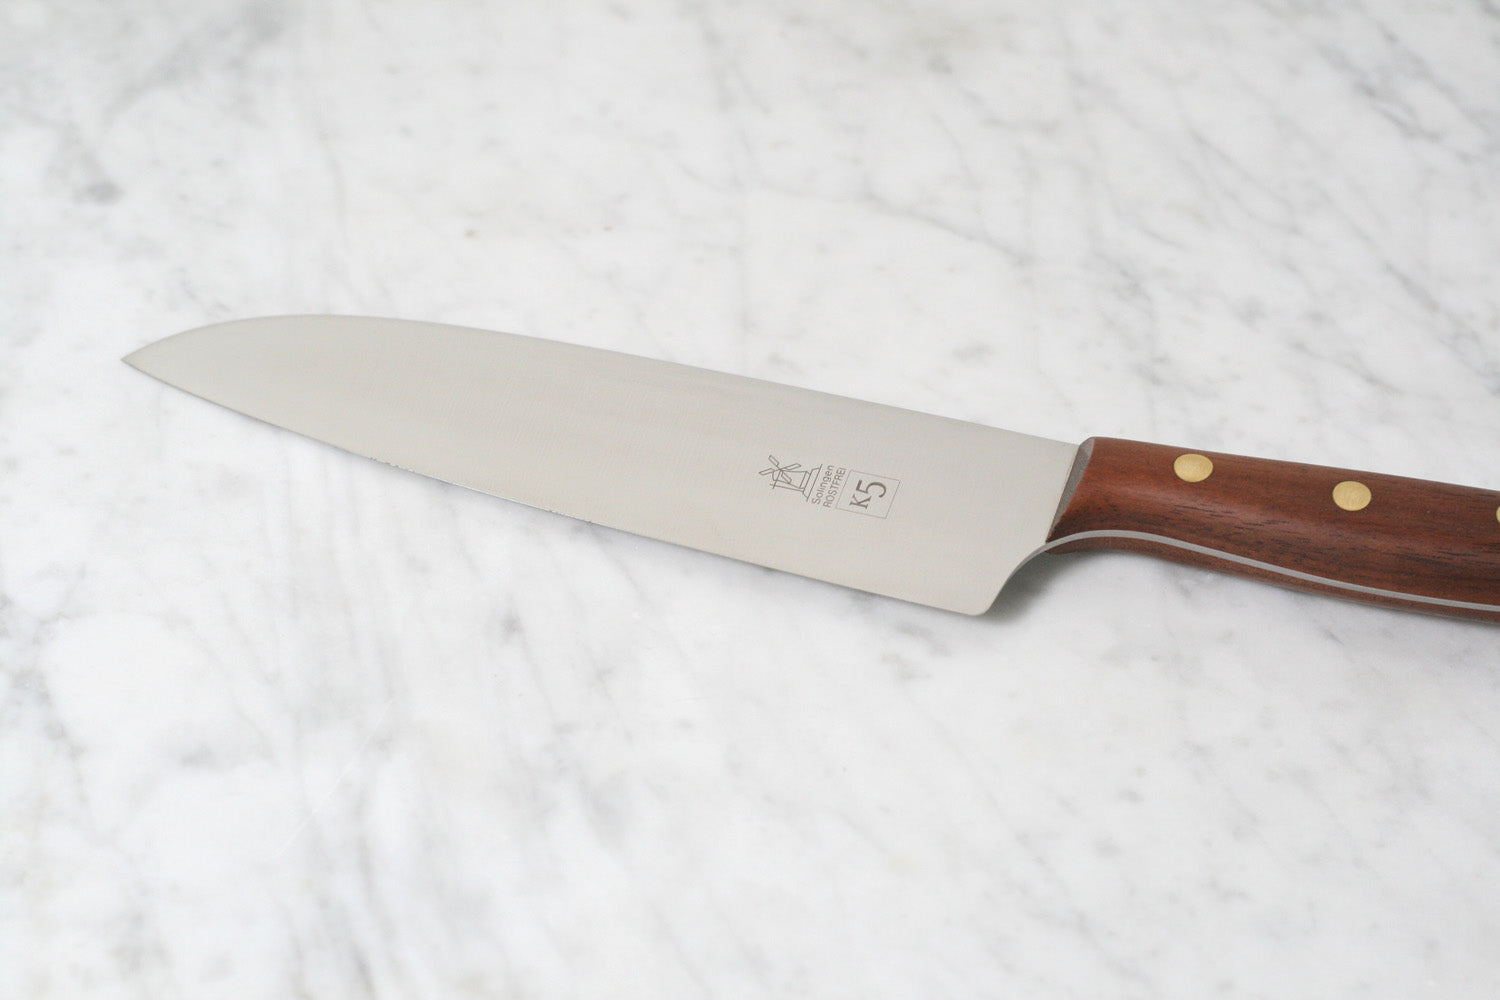 Robert Herder K5 Chef's Knife, Walnut Handle